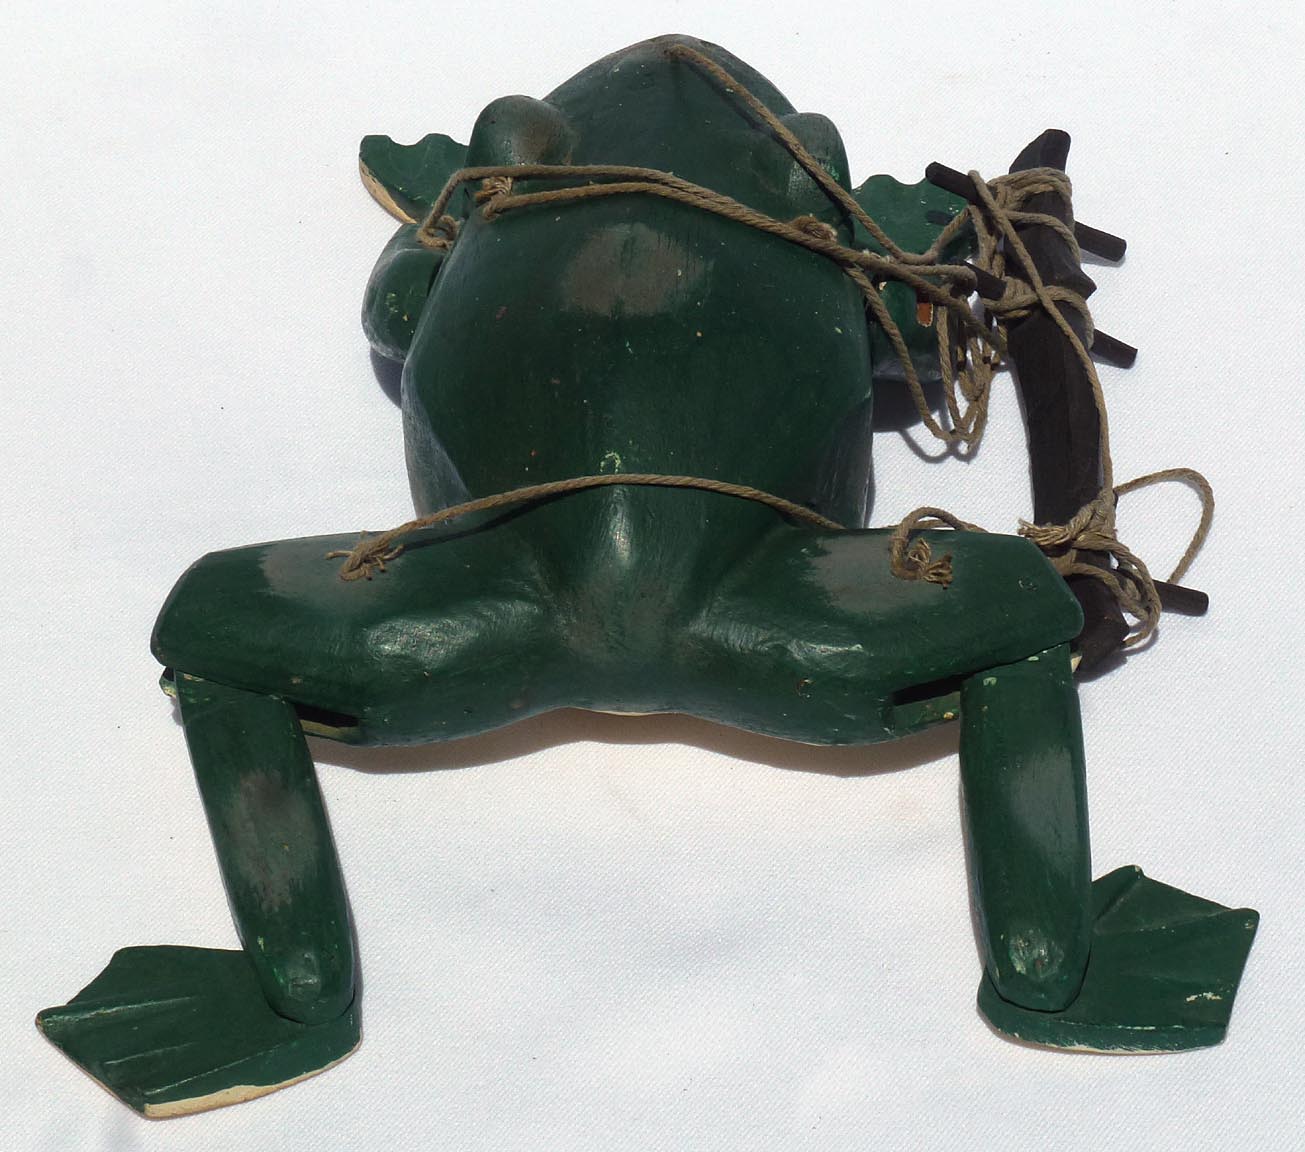 Frog marionette